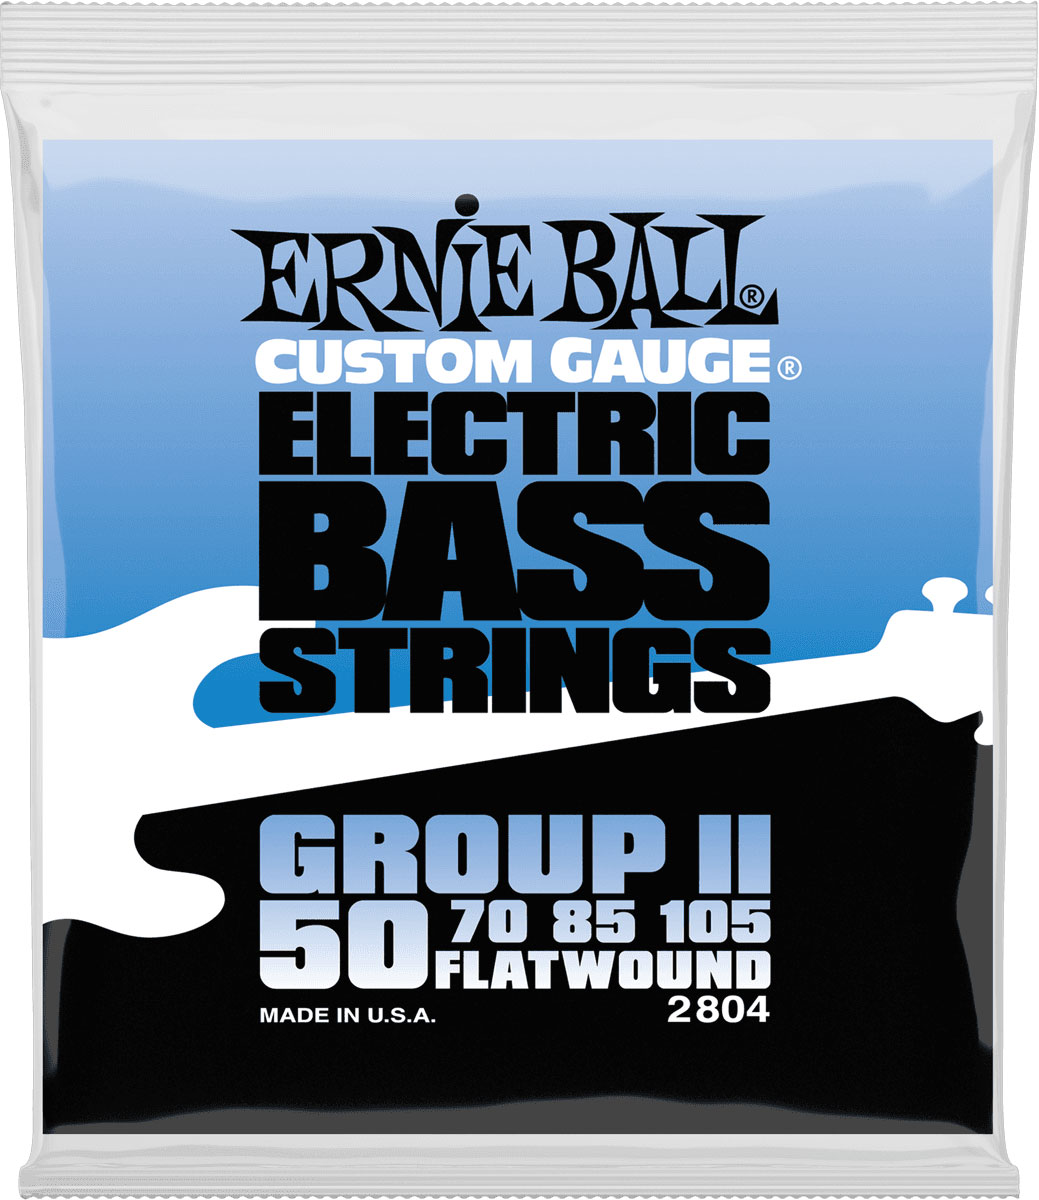 ERNIE BALL ELECTRIC BASS STRINGS 50-105 2804